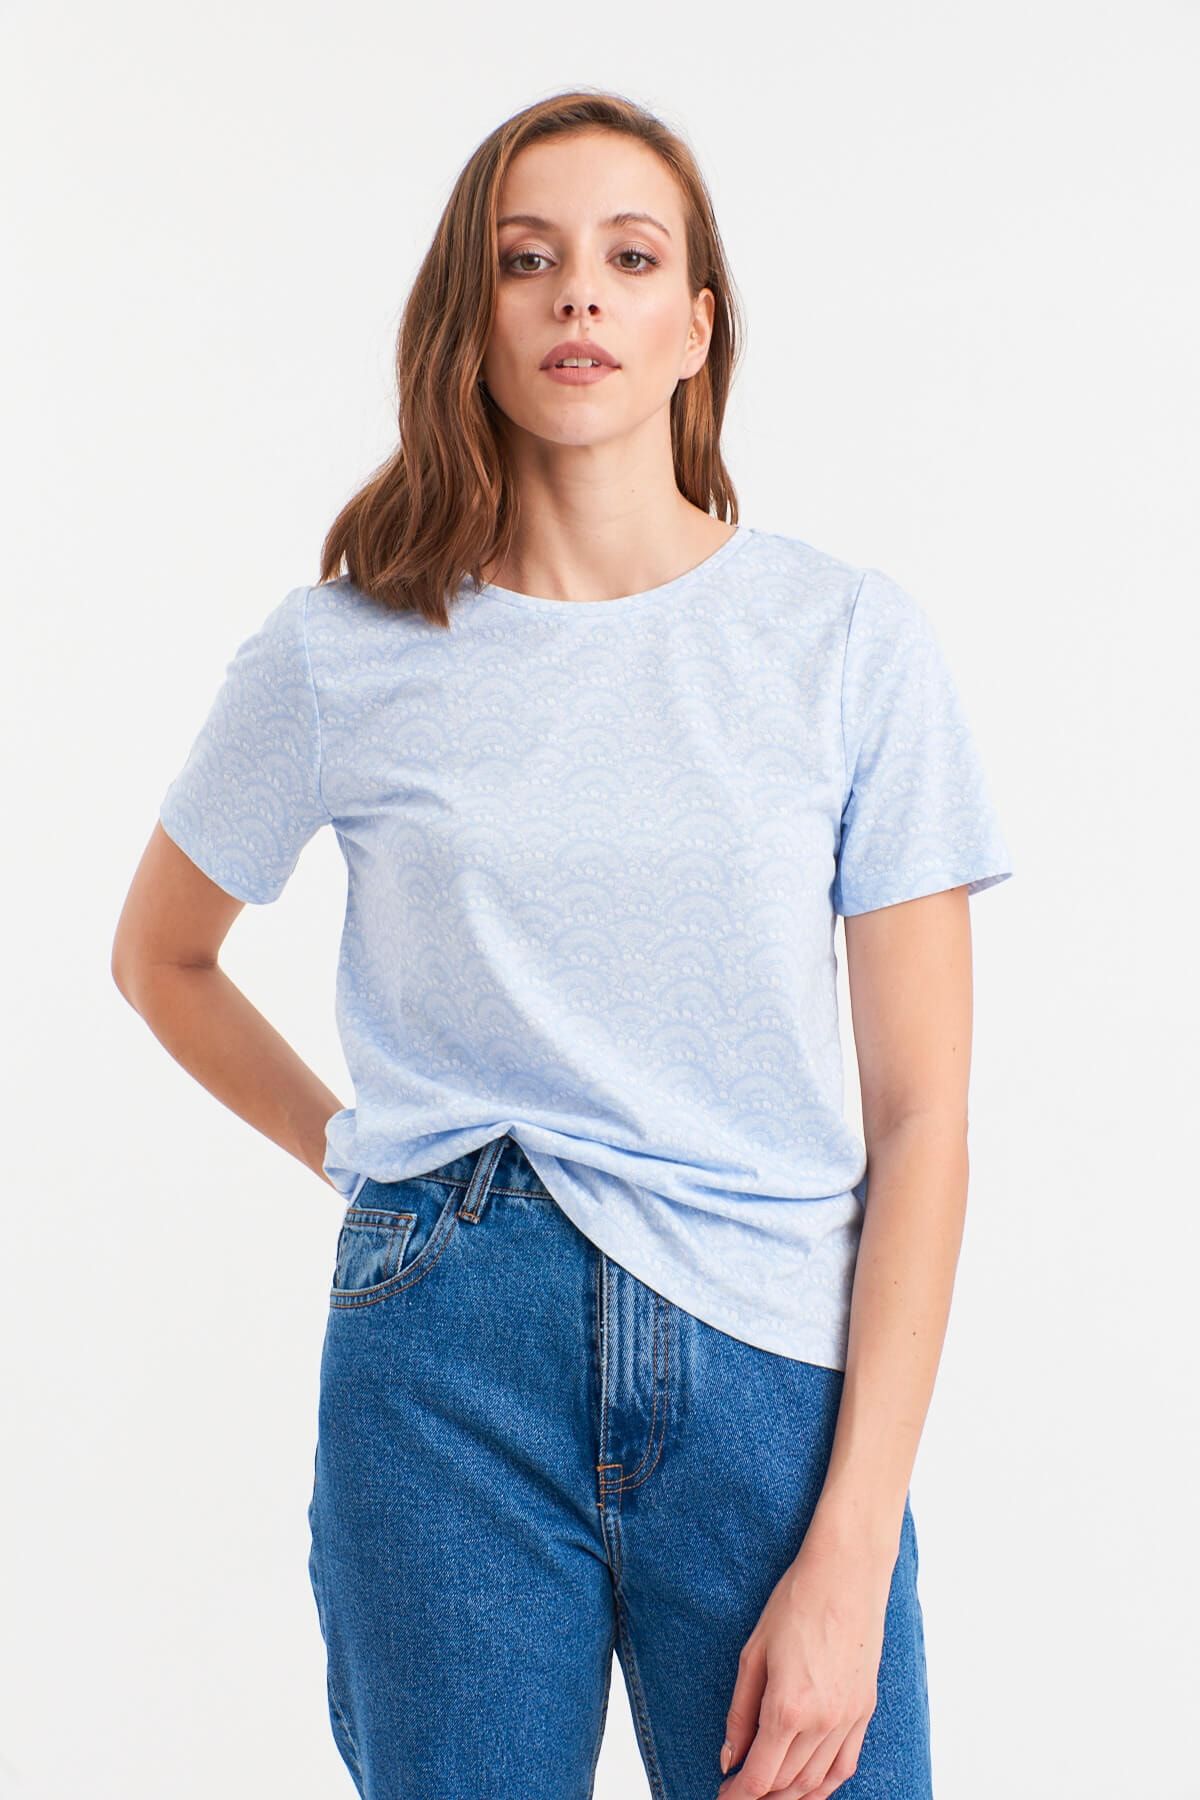 Hanna's Kadın Mavi Açılı Desenli T-shirt